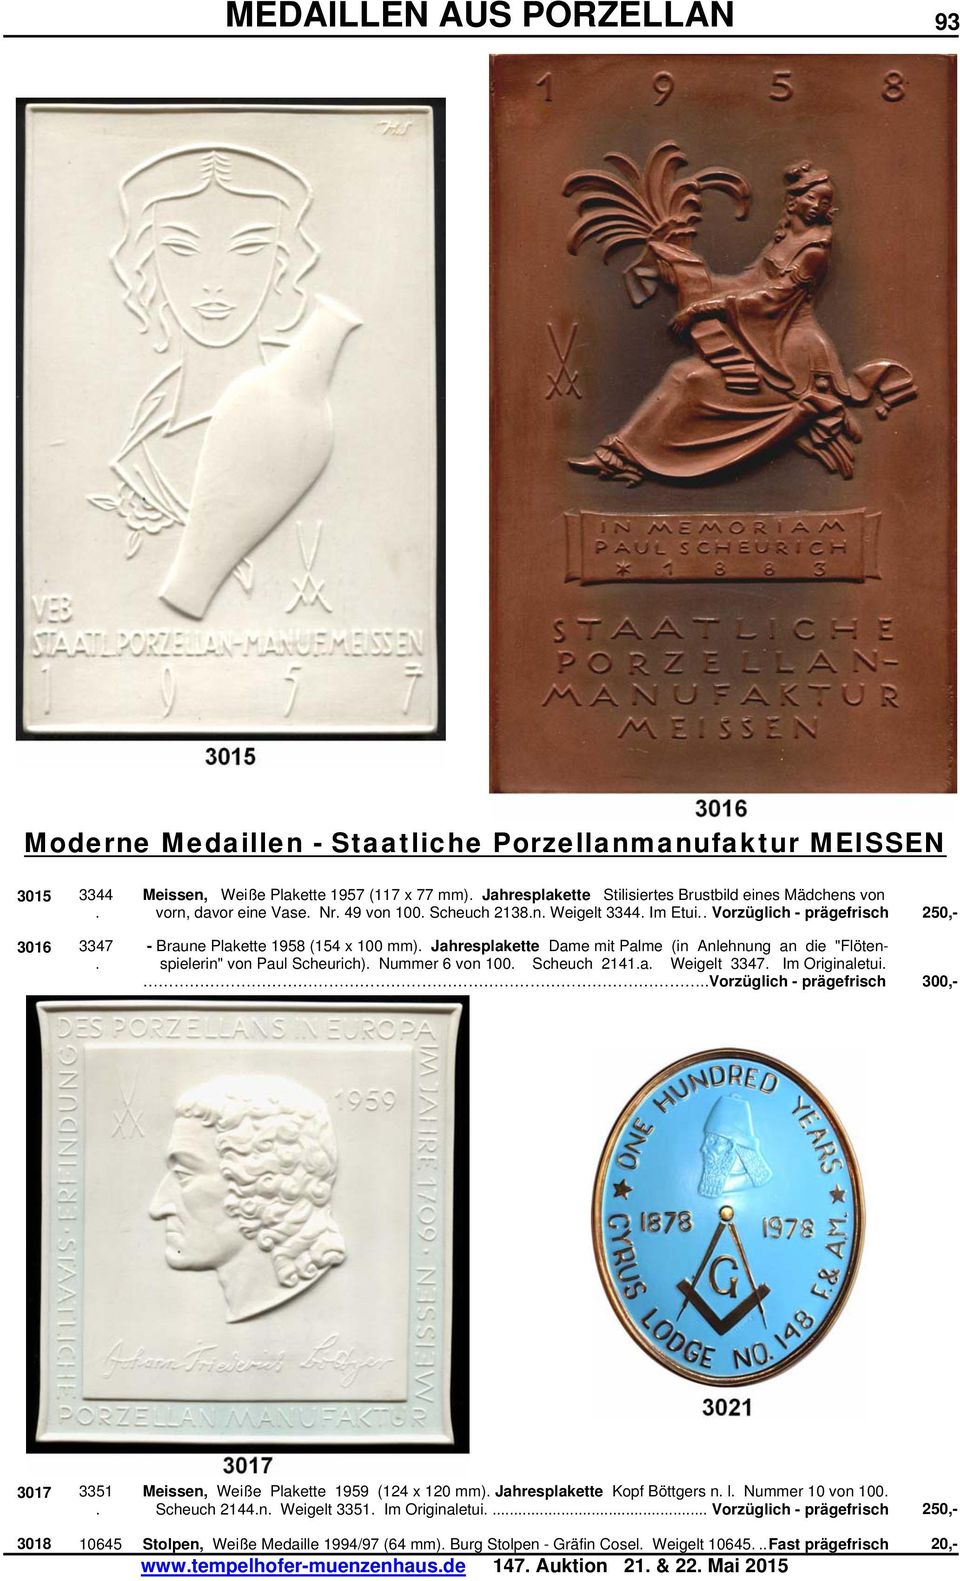 Jahresplakette Dame mit Palme (in Anlehnung an die "Flöten-. spielerin" von Paul Scheurich). Nummer 6 von 100. Scheuch 2141.a. Weigelt 3347. Im Originaletui.